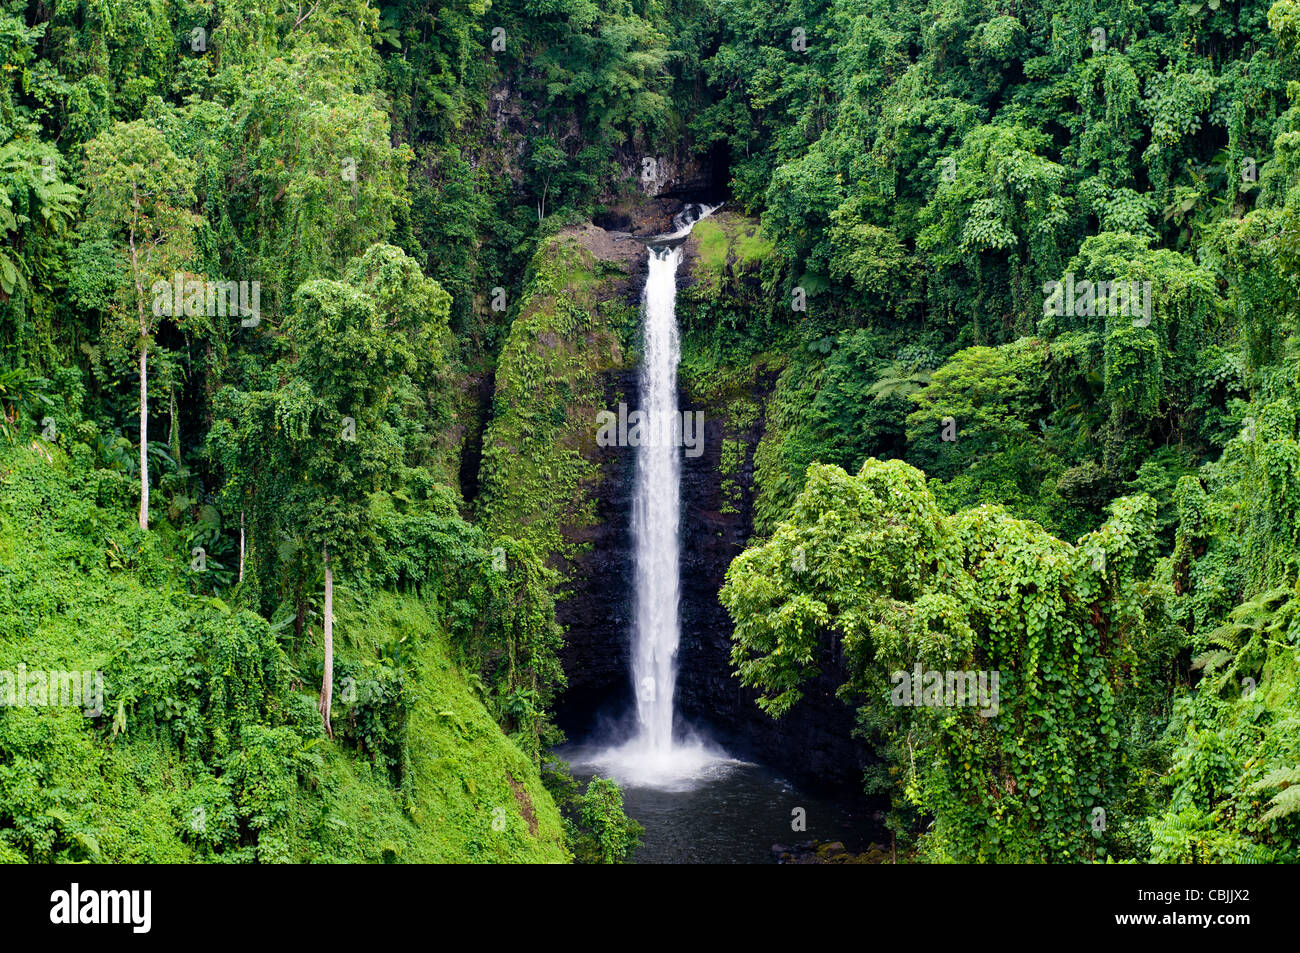 Caída de agua, rodeado por una exuberante vegetación, Samoa Foto de stock